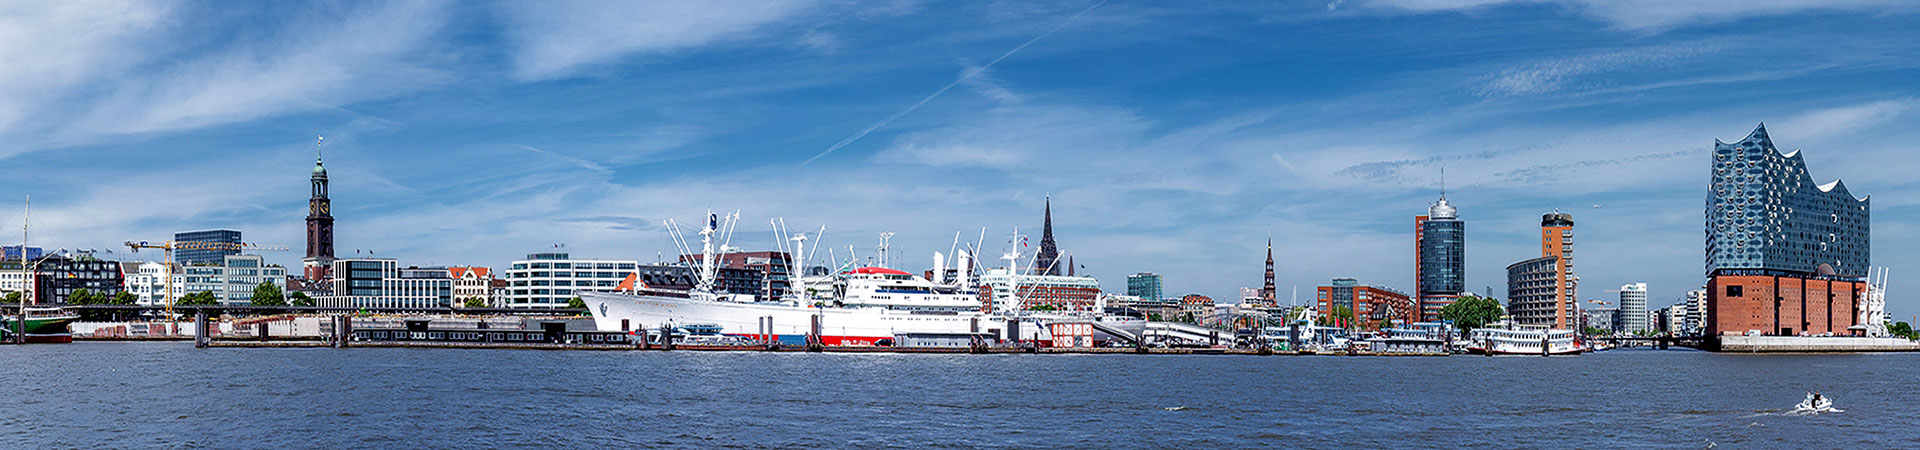 Hamburger Hafencity und Elbphilharmonie